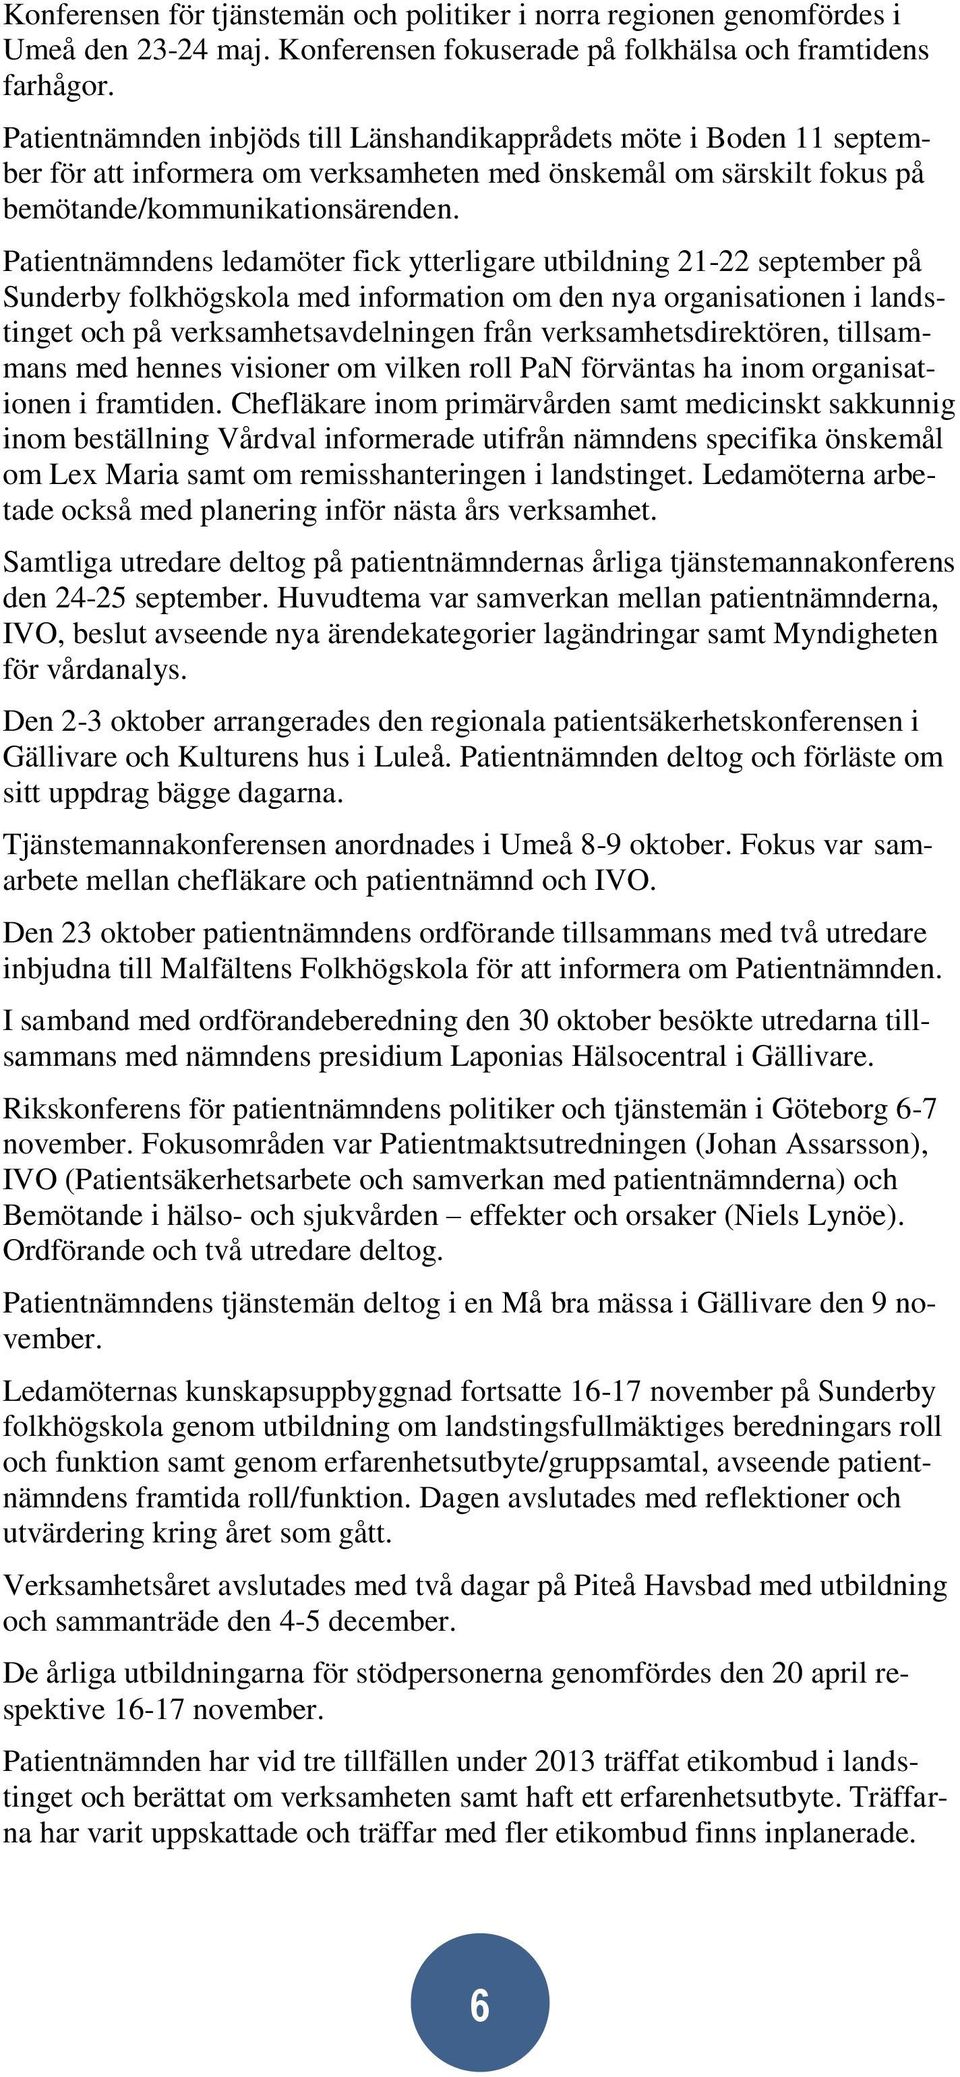 Patientnämndens ledamöter fick ytterligare utbildning 21-22 september på Sunderby folkhögskola med information om den nya organisationen i landstinget och på verksamhetsavdelningen från